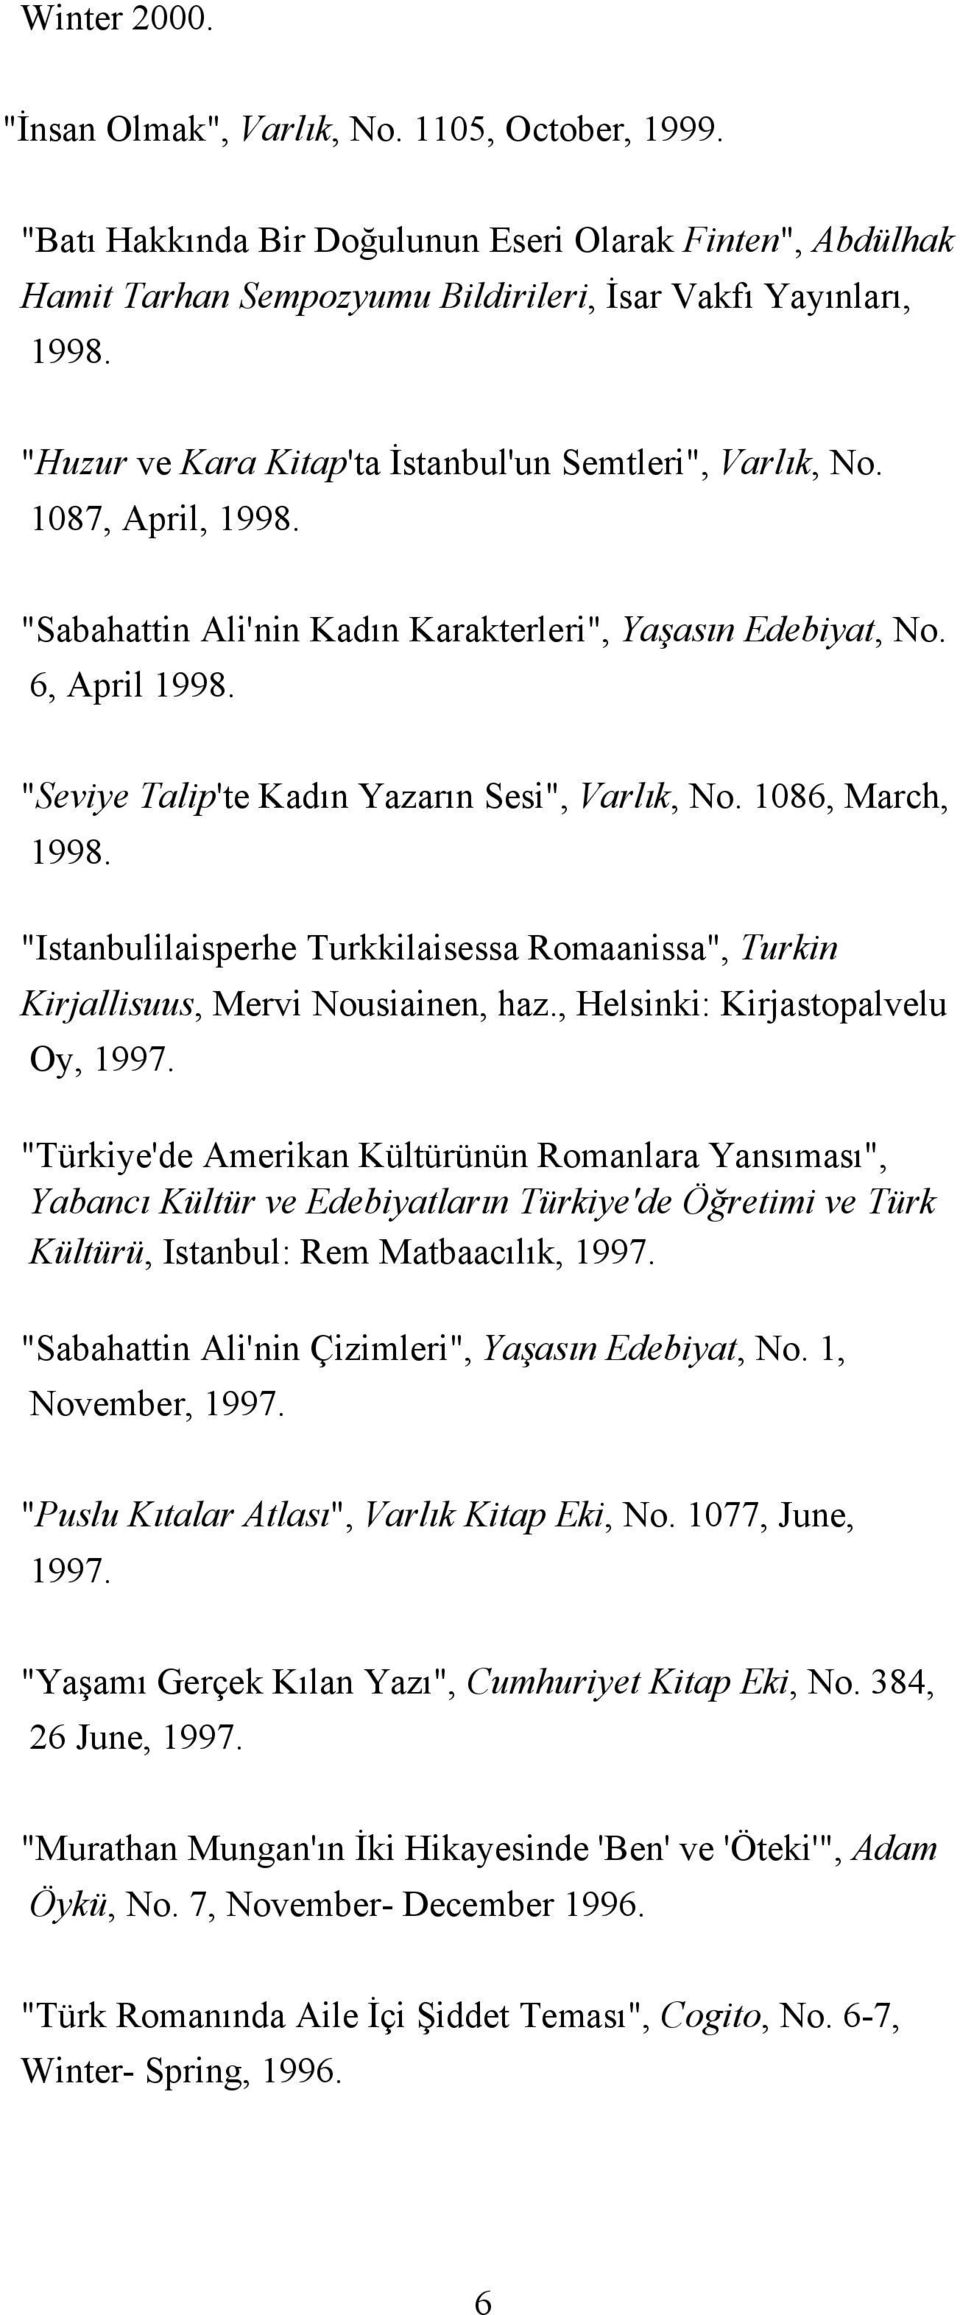 "Seviye Talip'te Kadın Yazarın Sesi", Varlık, No. 1086, March, 1998. "Istanbulilaisperhe Turkkilaisessa Romaanissa", Turkin Kirjallisuus, Mervi Nousiainen, haz., Helsinki: Kirjastopalvelu Oy, 1997.